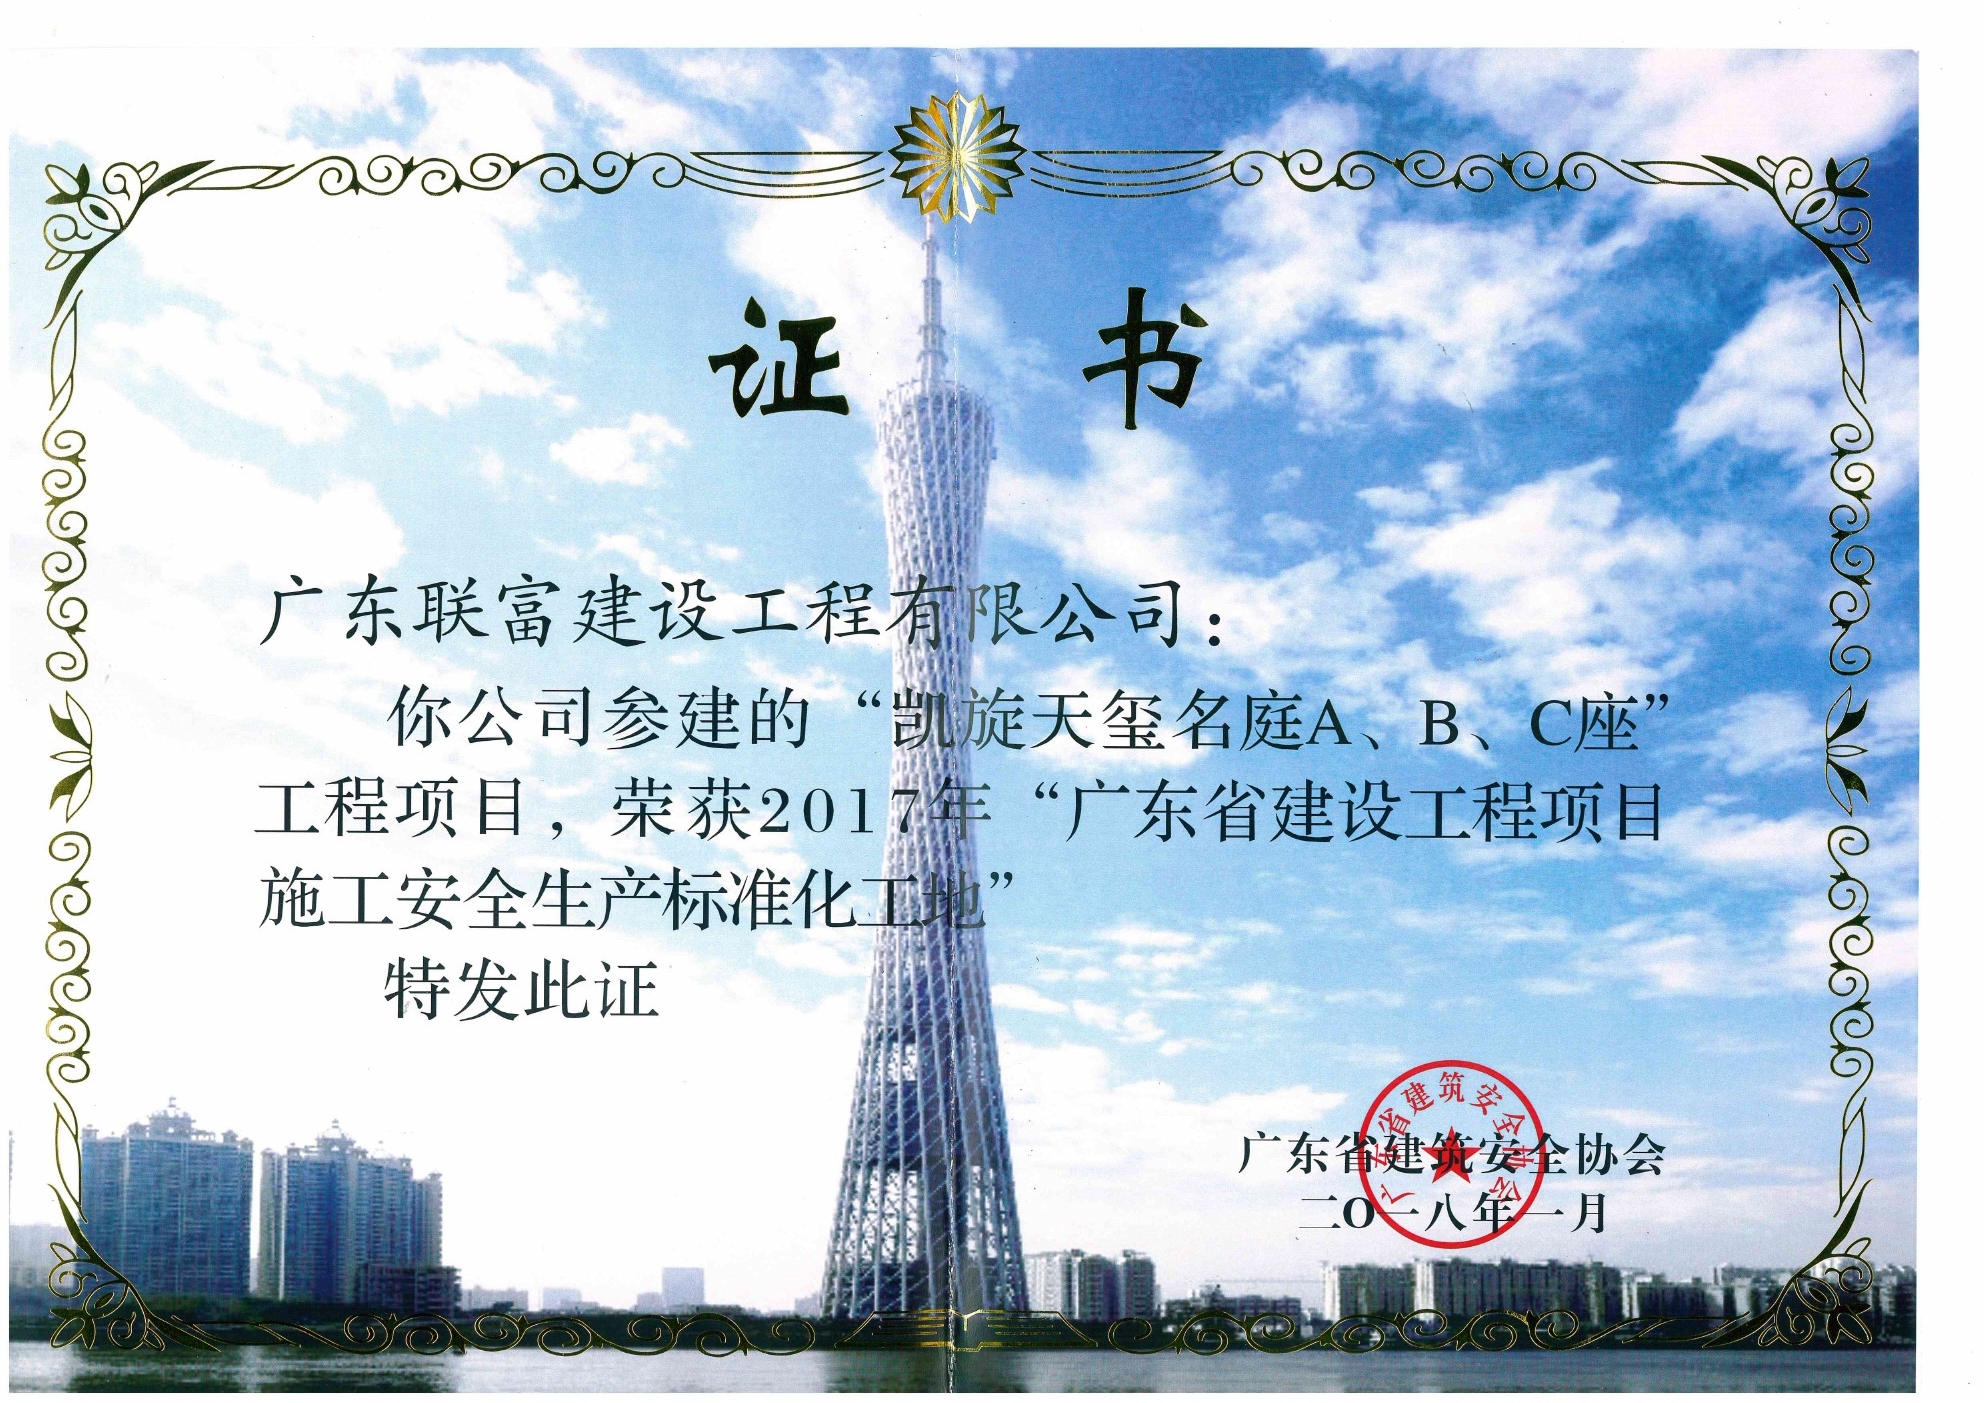 2018年1月凯旋天玺名庭A、B、C座工程项目荣获 ”广东省建设工程项目施工安全生产标准化工地”荣誉证书